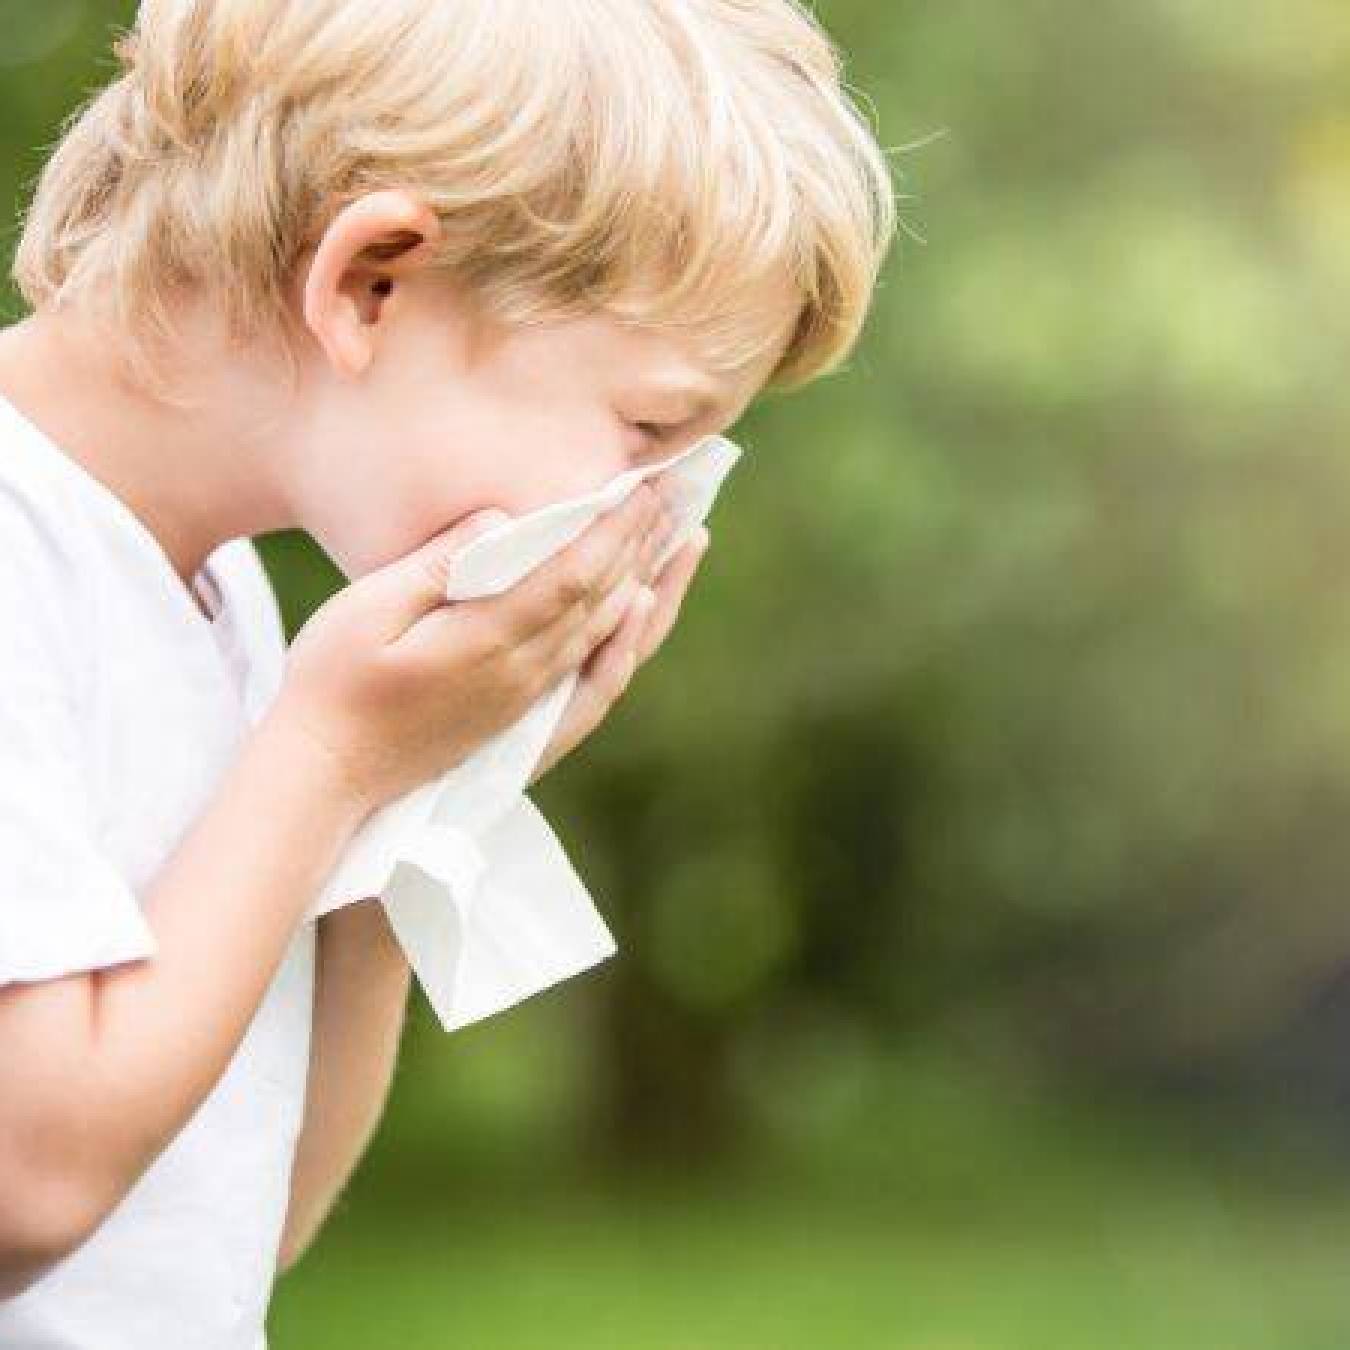 Jakie są najskuteczniejsze sposoby na zapobieganie alergii u dzieci